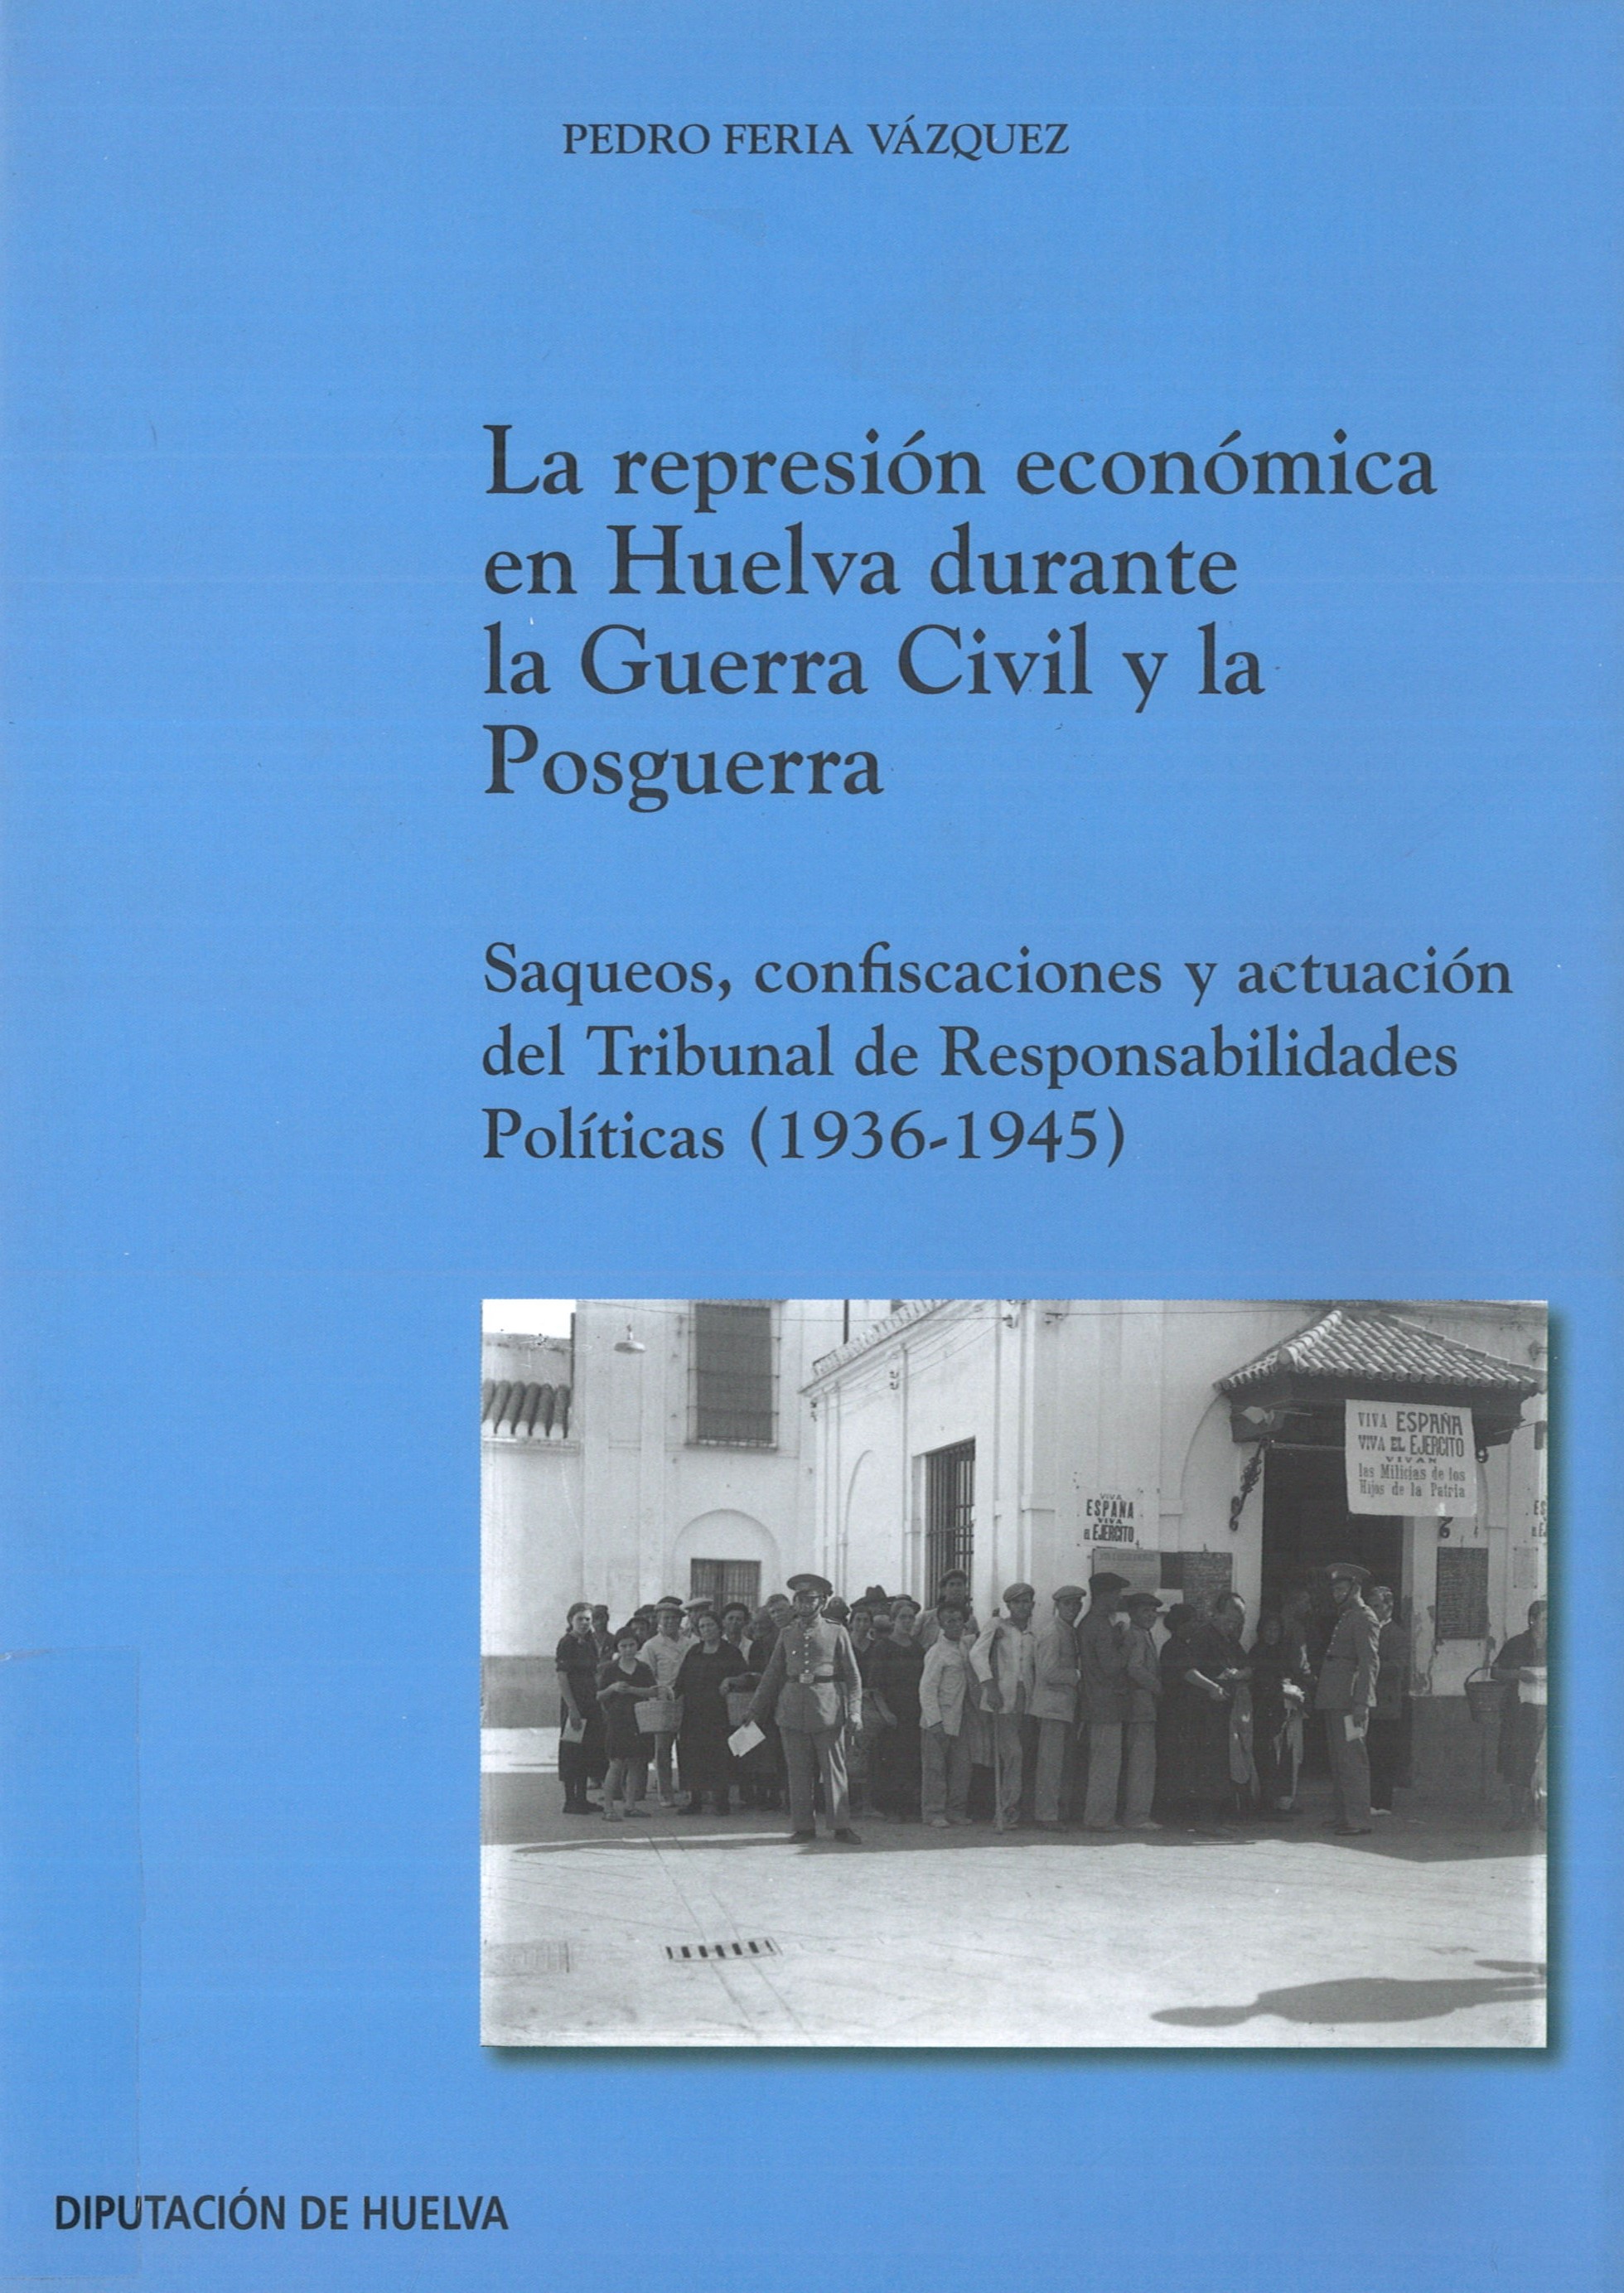 Imagen de portada del libro La represión económica en Huelva durante la Guerra Civil y la Posguerra